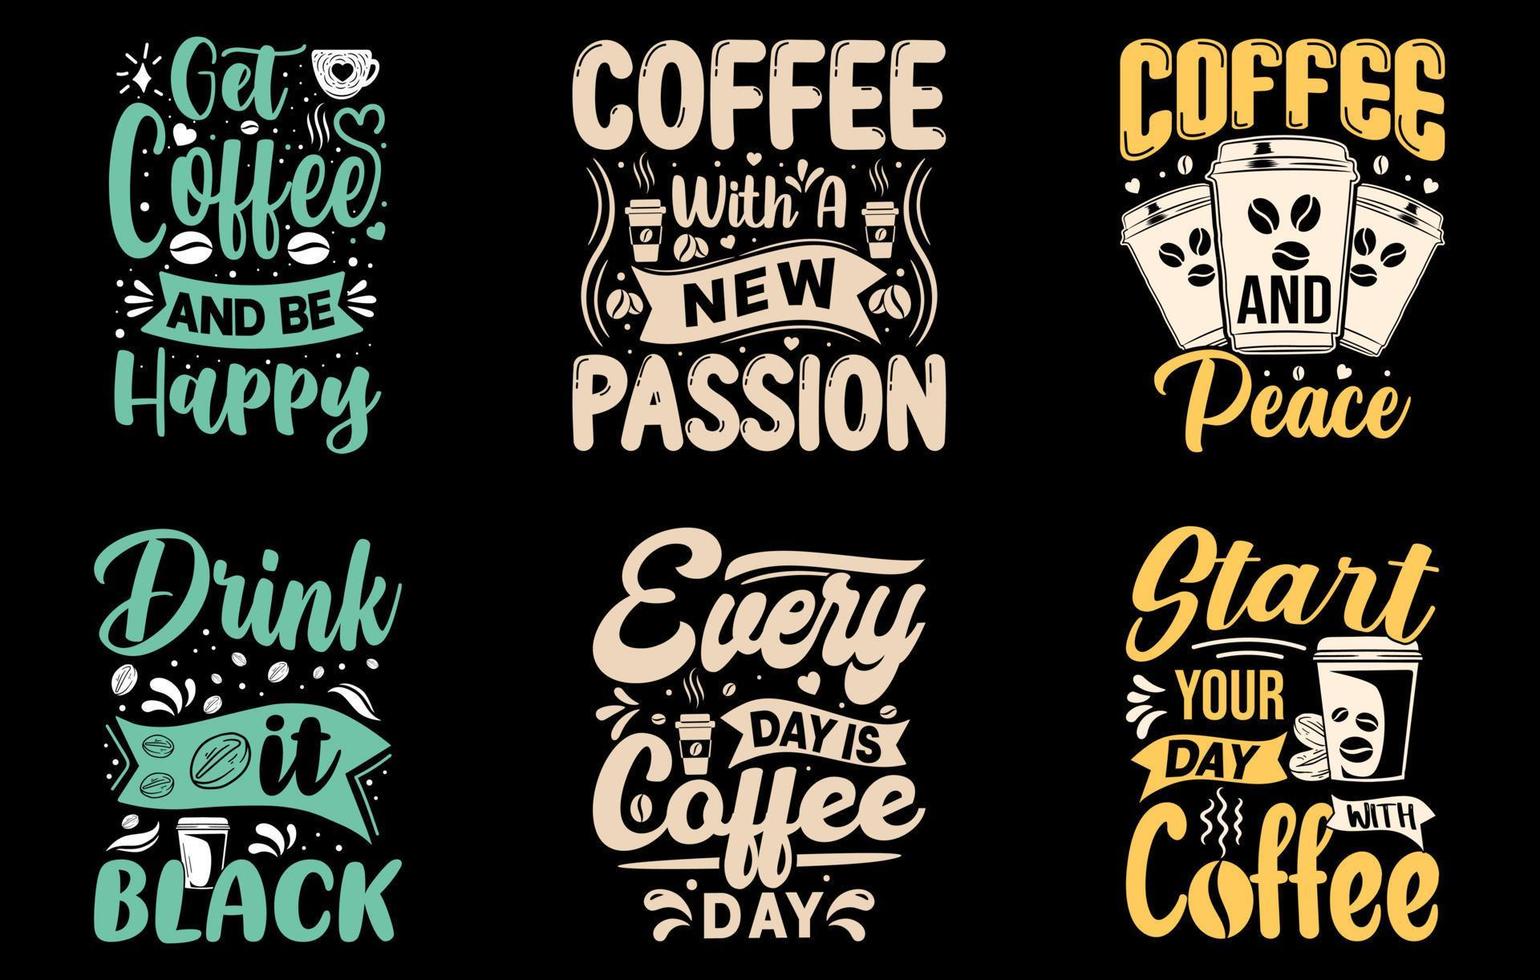 kaffe t-shirt text Citat bunt, kaffe med en ny passion, kaffe och fred, t-shirt design, skaffa sig kaffe och vara Lycklig, varje dag är kaffe dag vektor